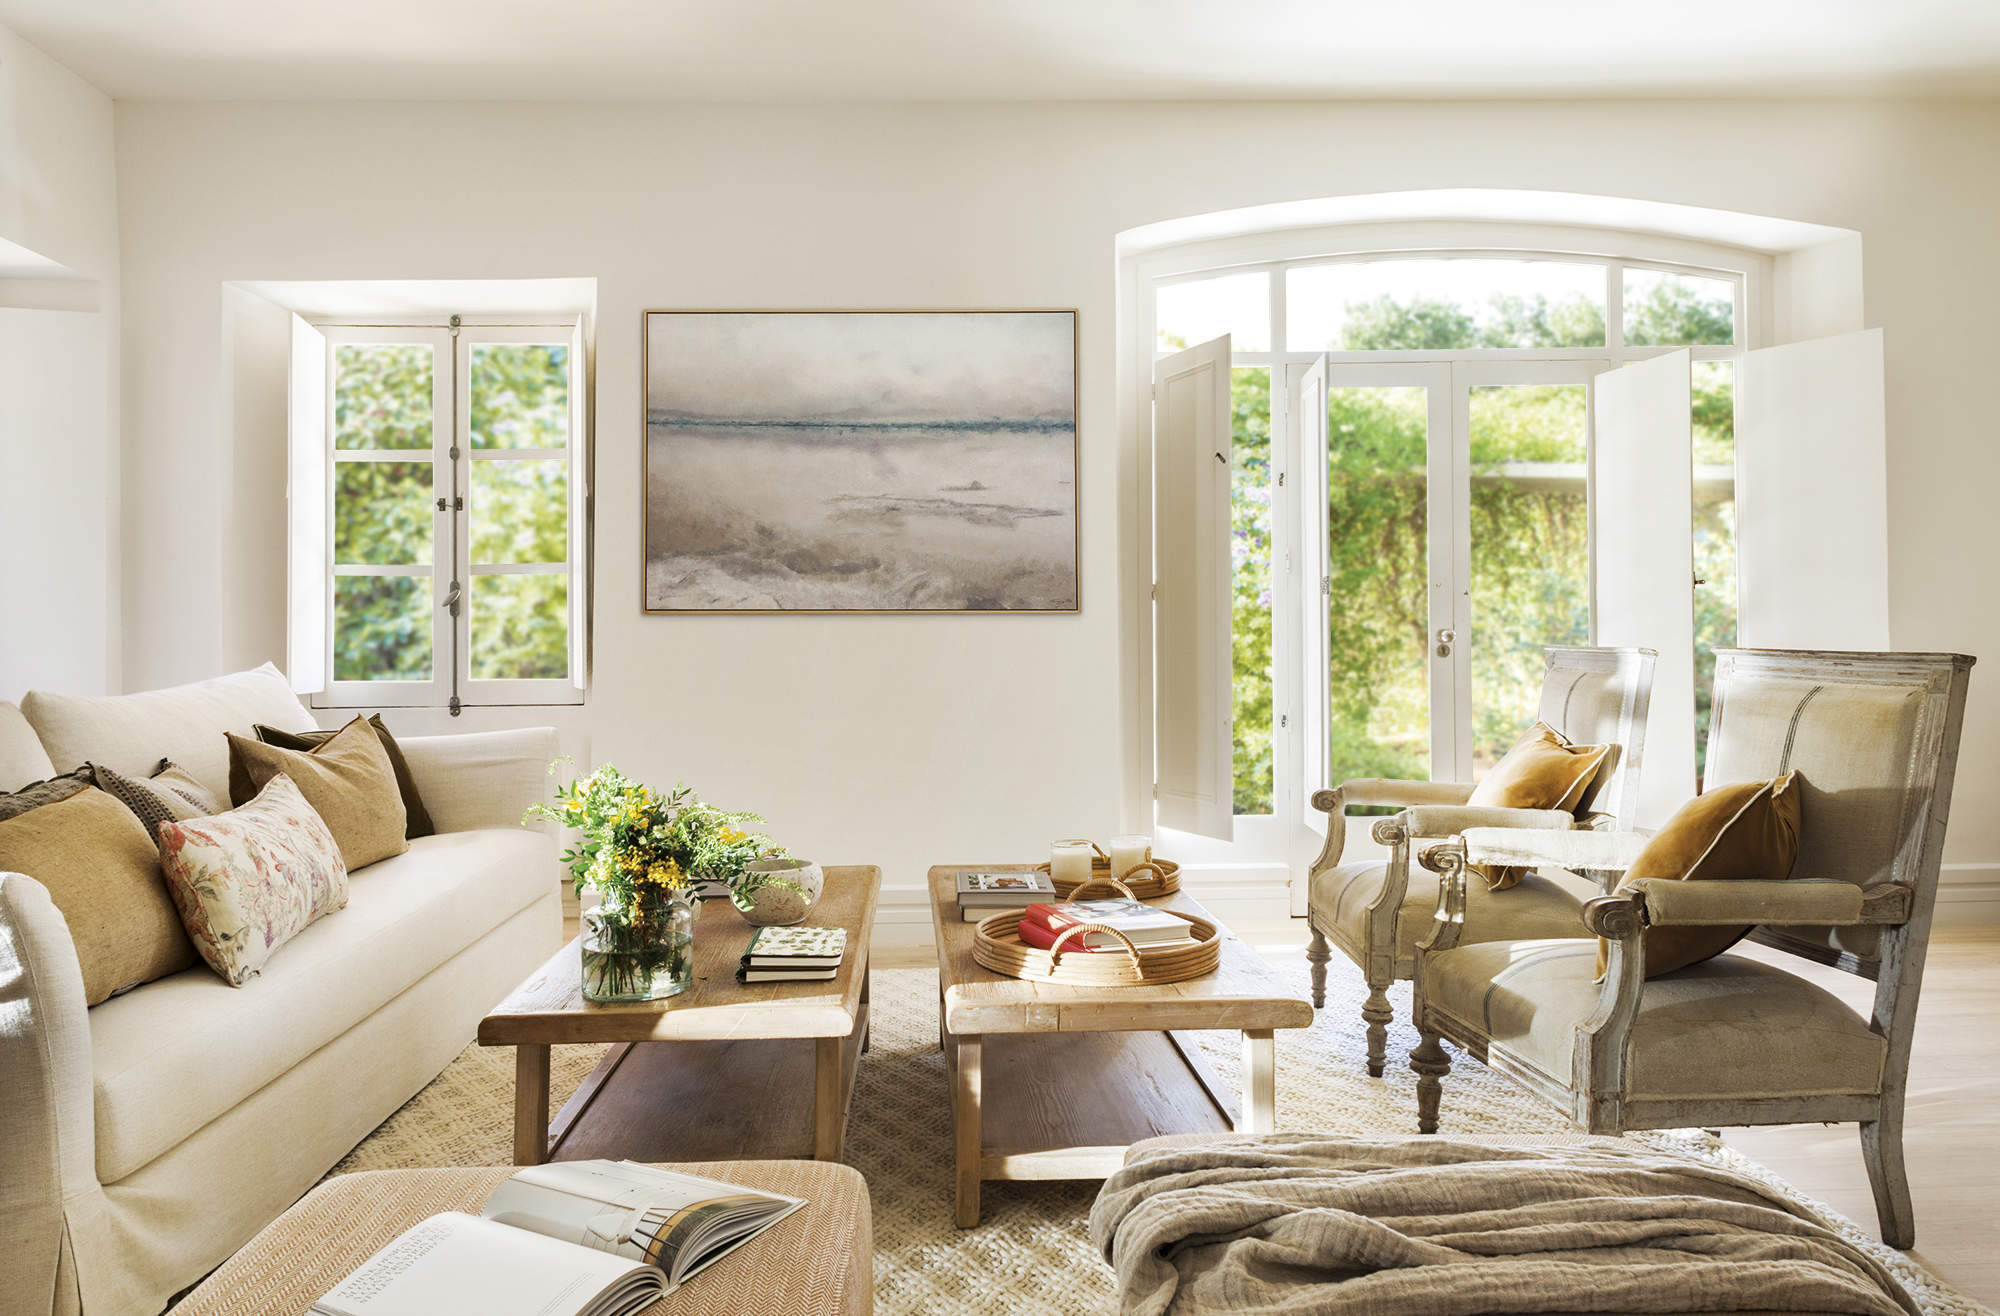 salón con sofá blanco y cojines mostaza, dos mesas de centro de madera, cuadro, ventanal al jardín, butacas de madera tapizadas